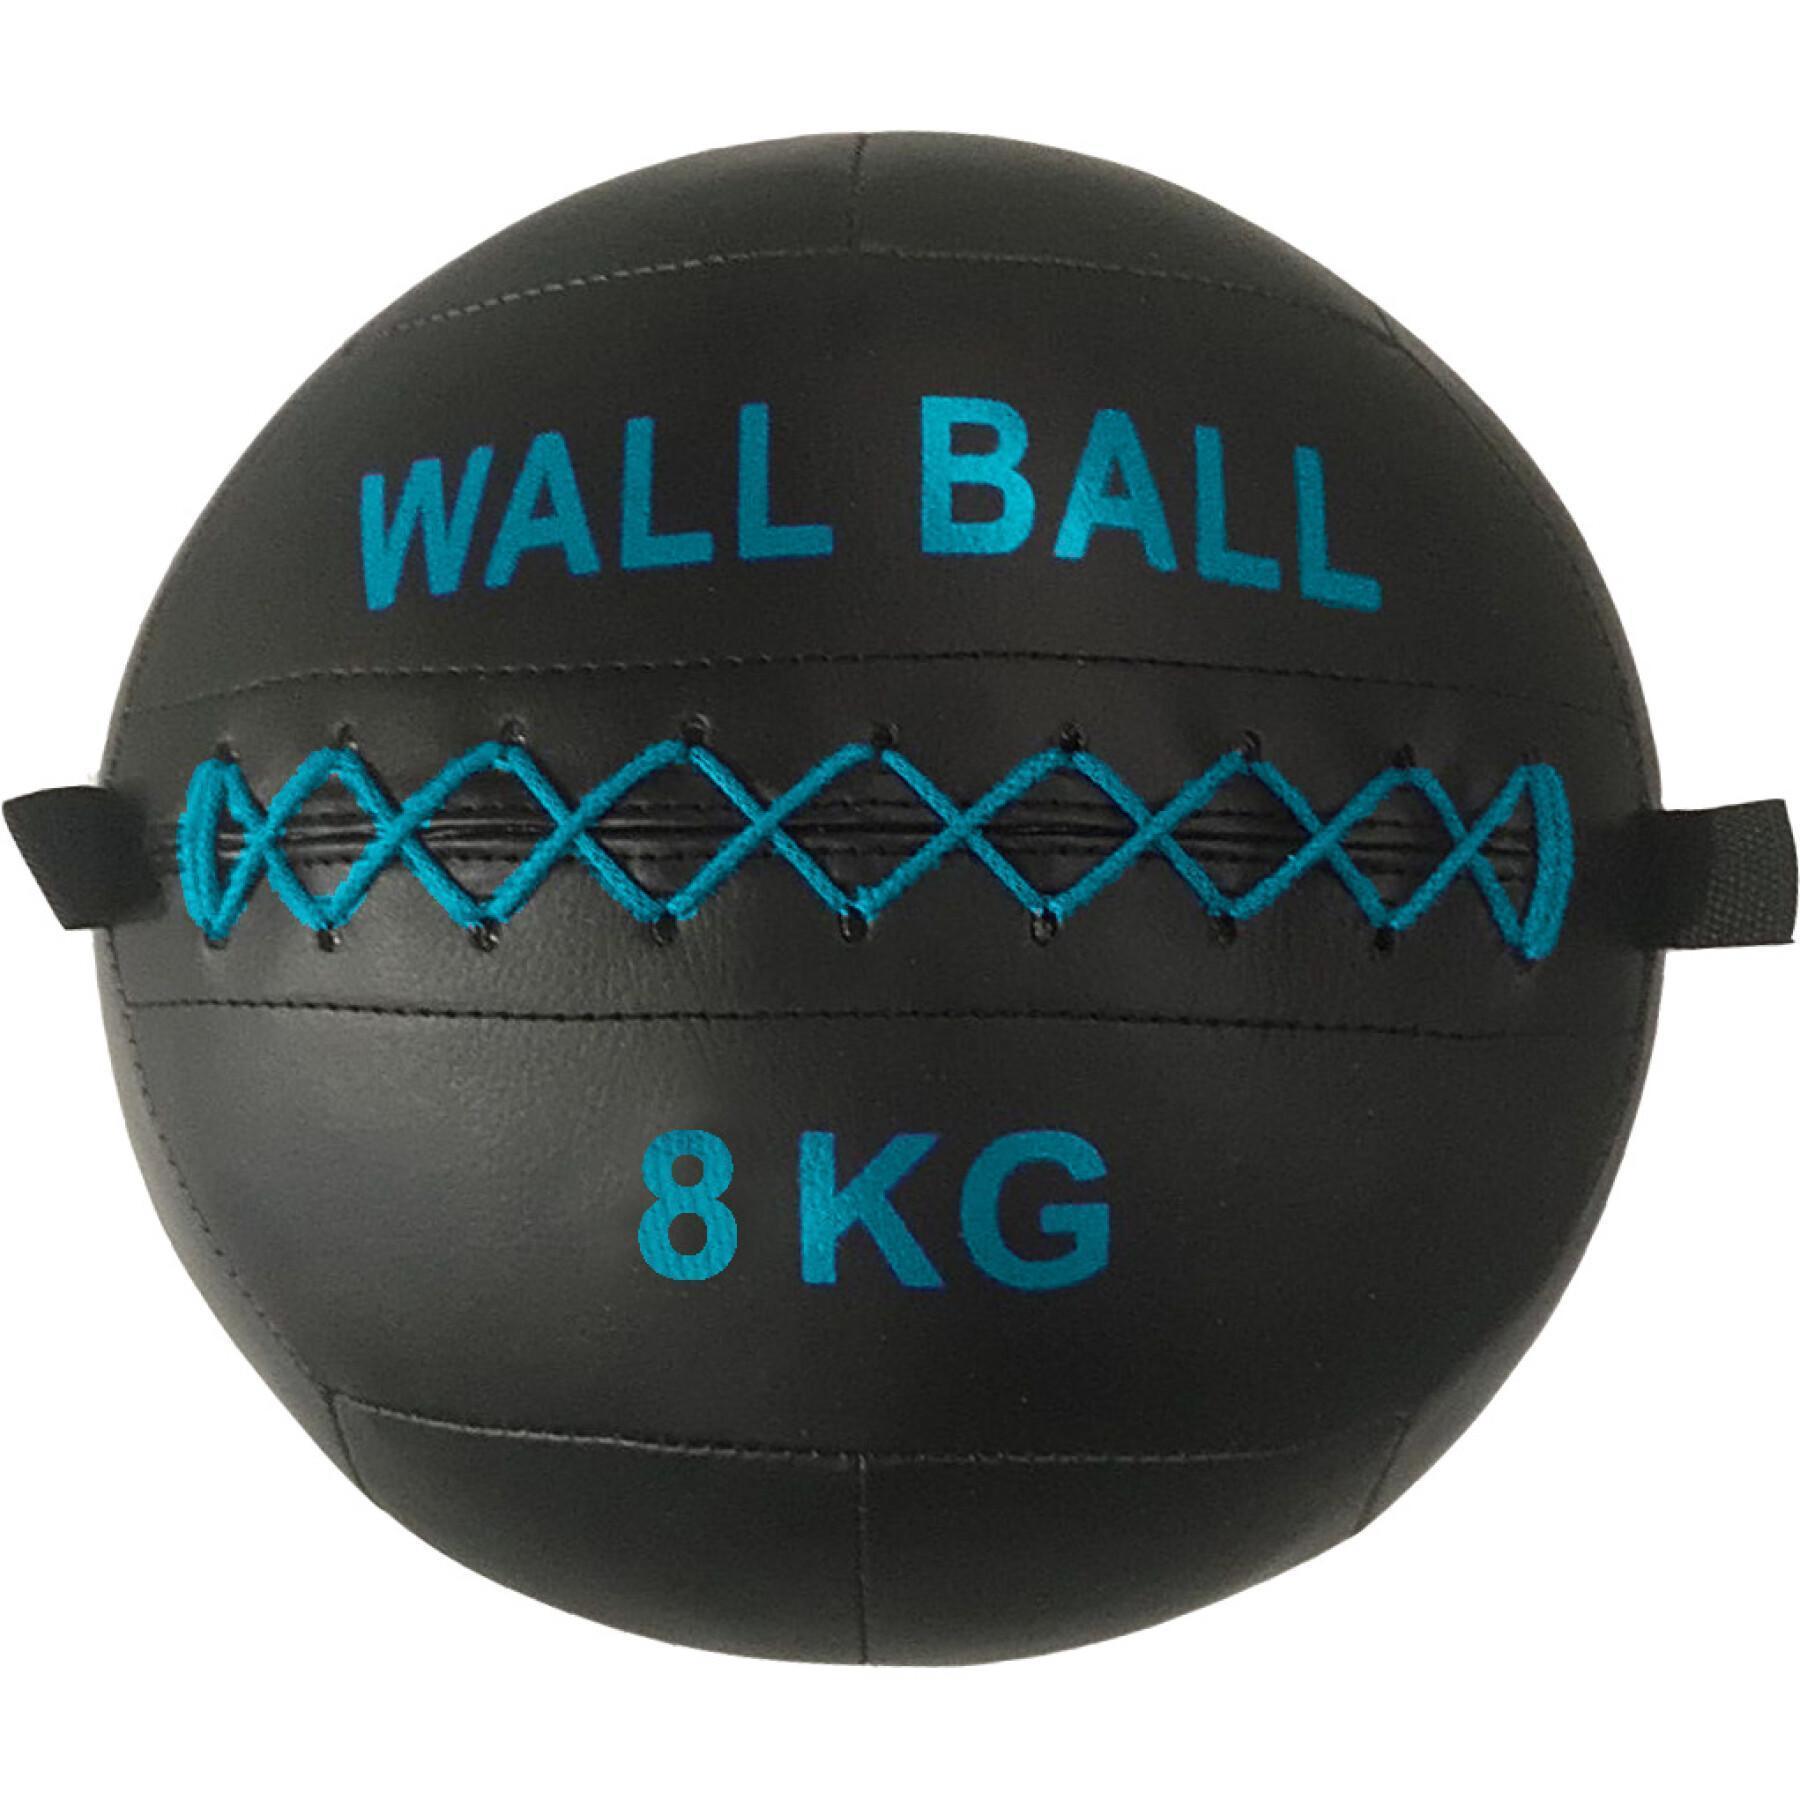 Wall Ball Sporti France 8kg